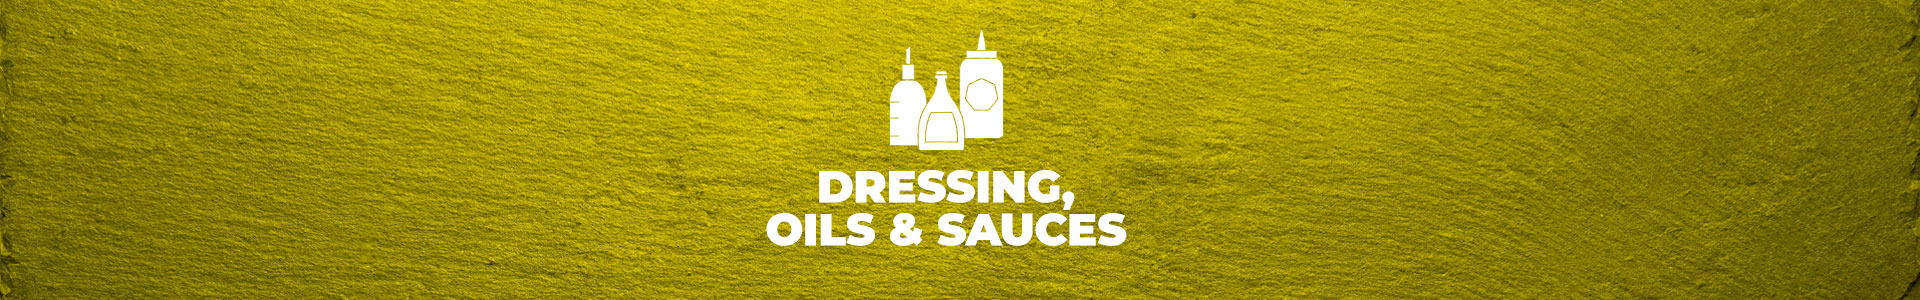 Dressings, Oils & Sauces